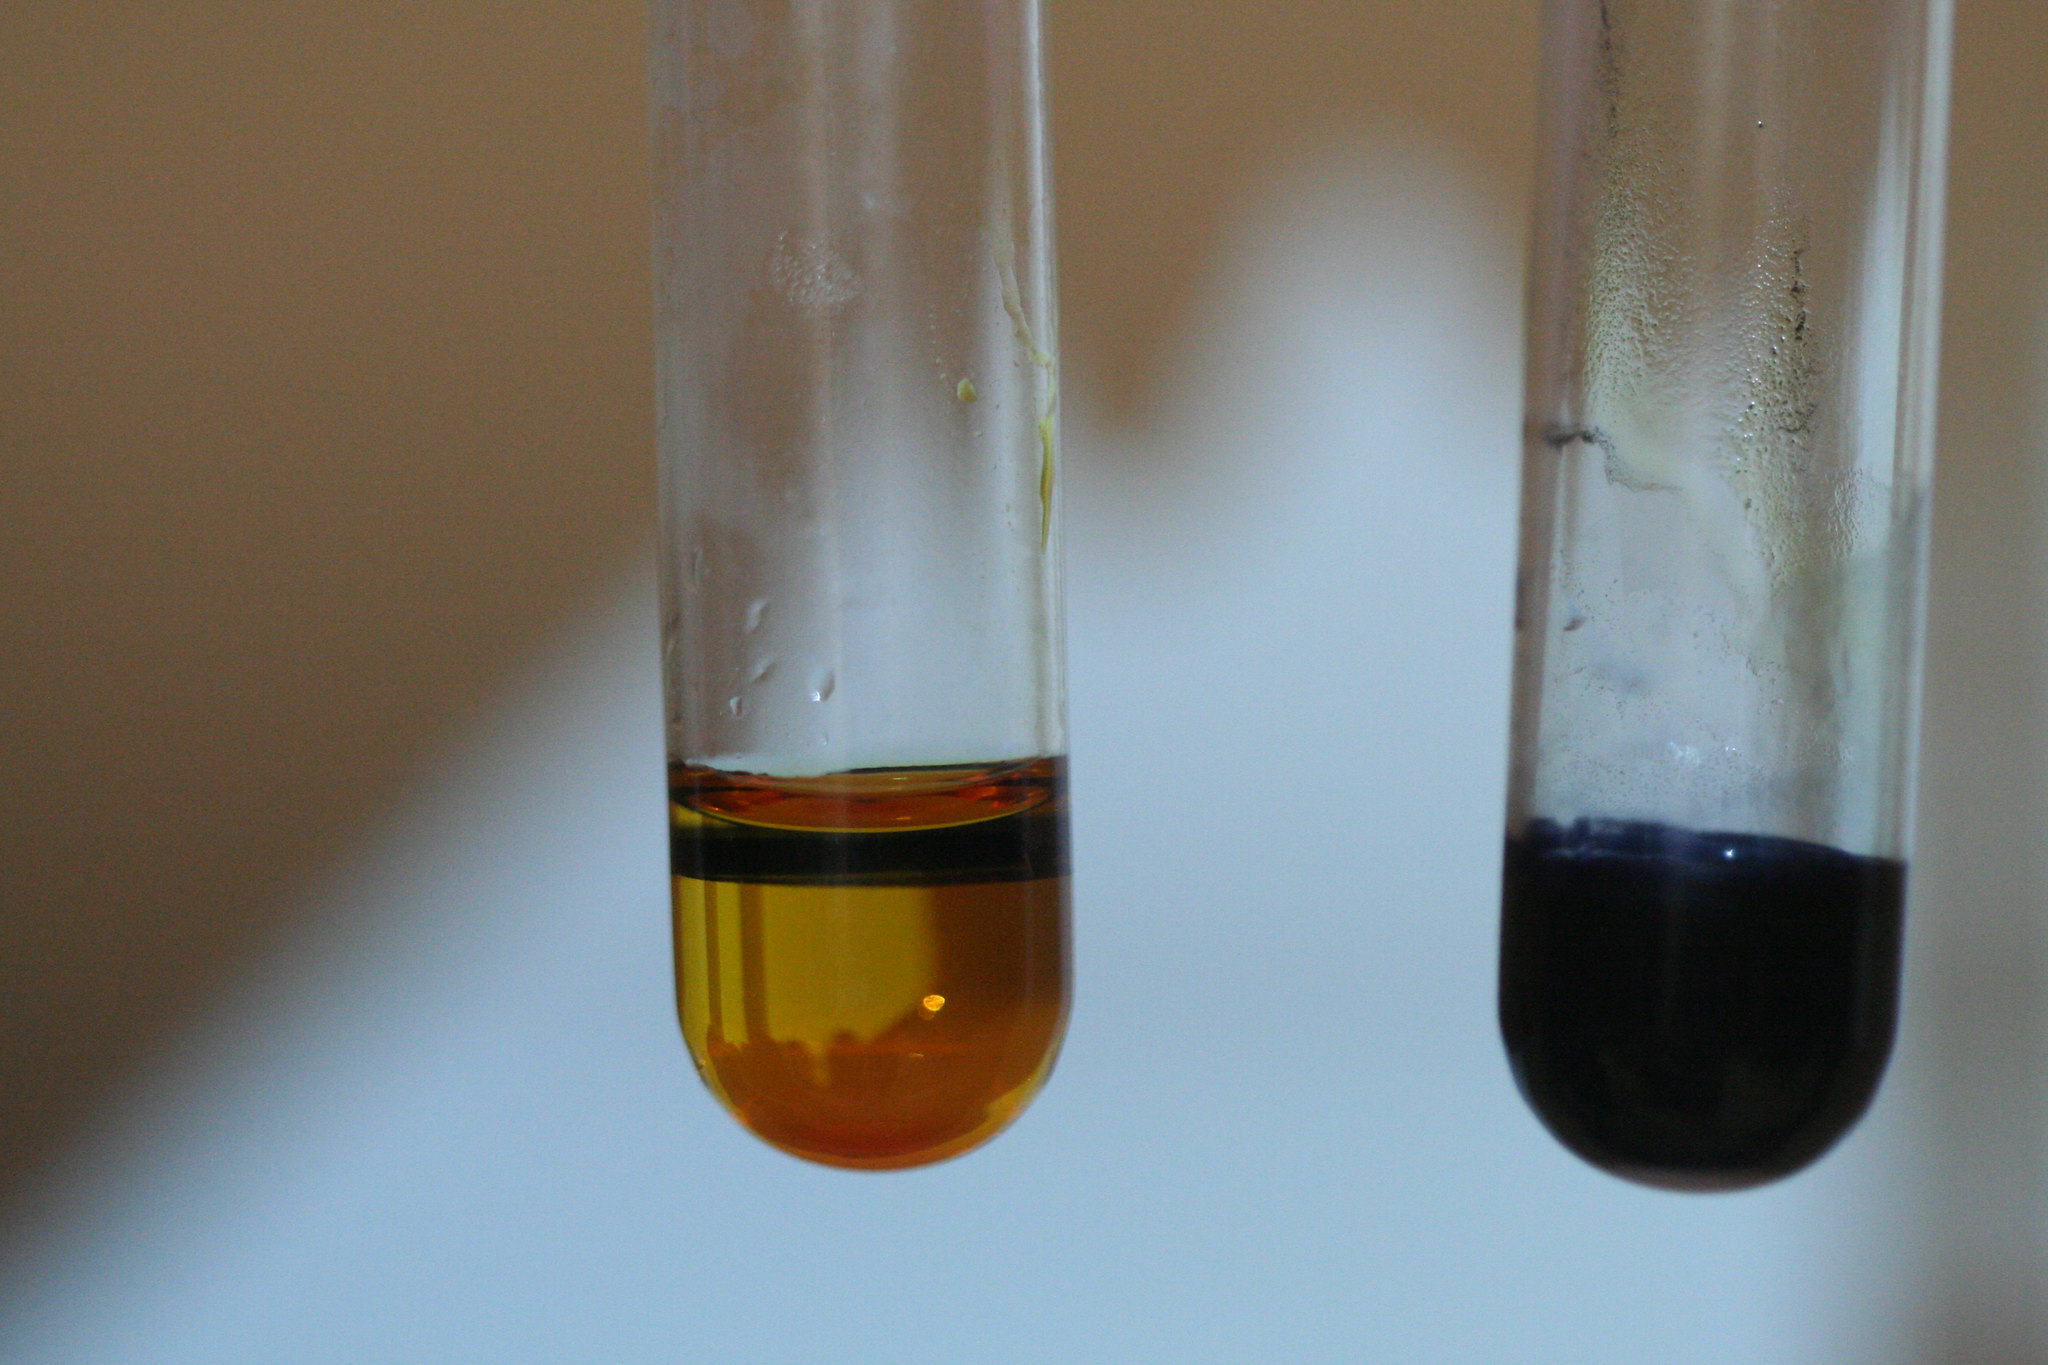 Нитрат свинца сульфат железа iii. Hg2i2 цвет осадка. Хлорид меди в пробирке. Пробирка с раствором. Реакция в пробирке.